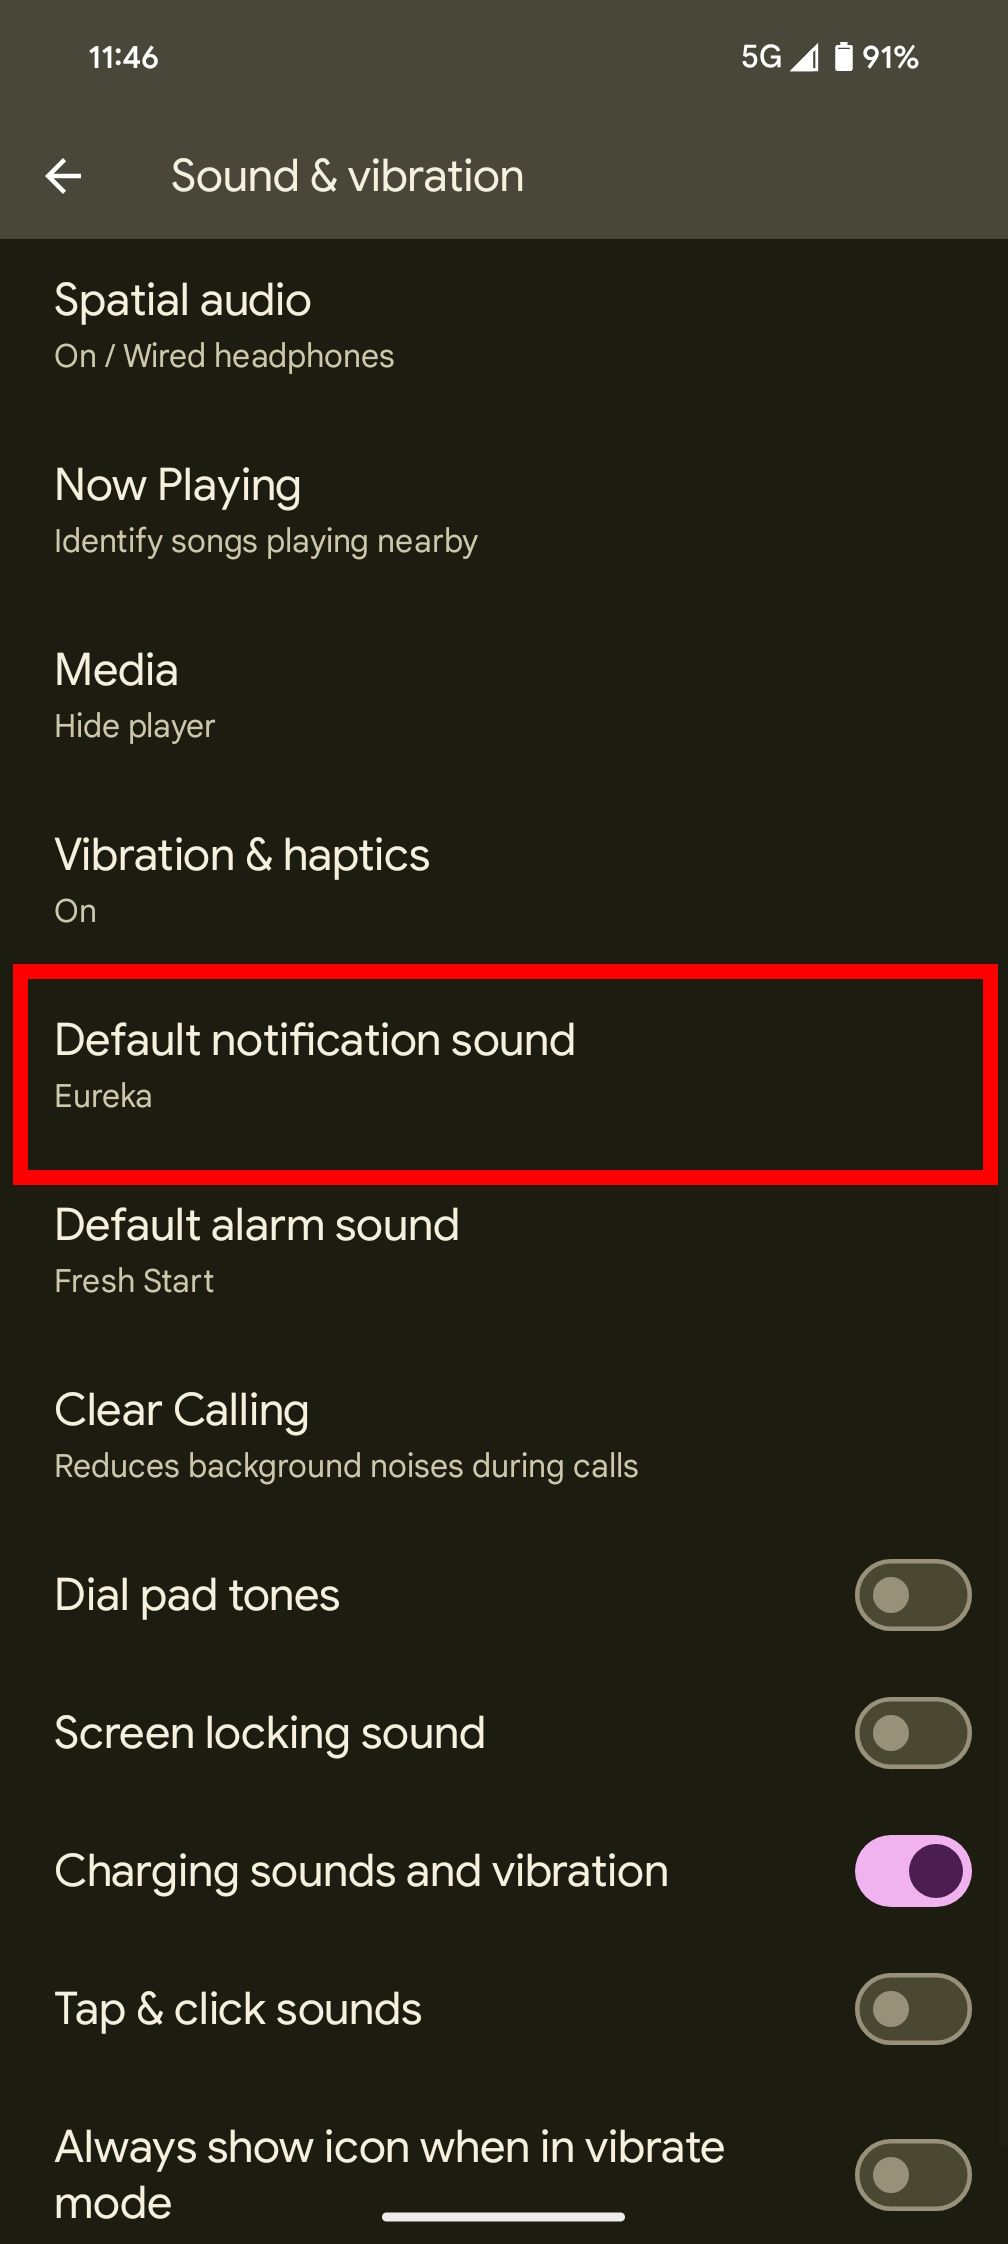 Contorno de retângulo vermelho sobre o som de notificação padrão nas configurações de som e vibração em um telefone Android